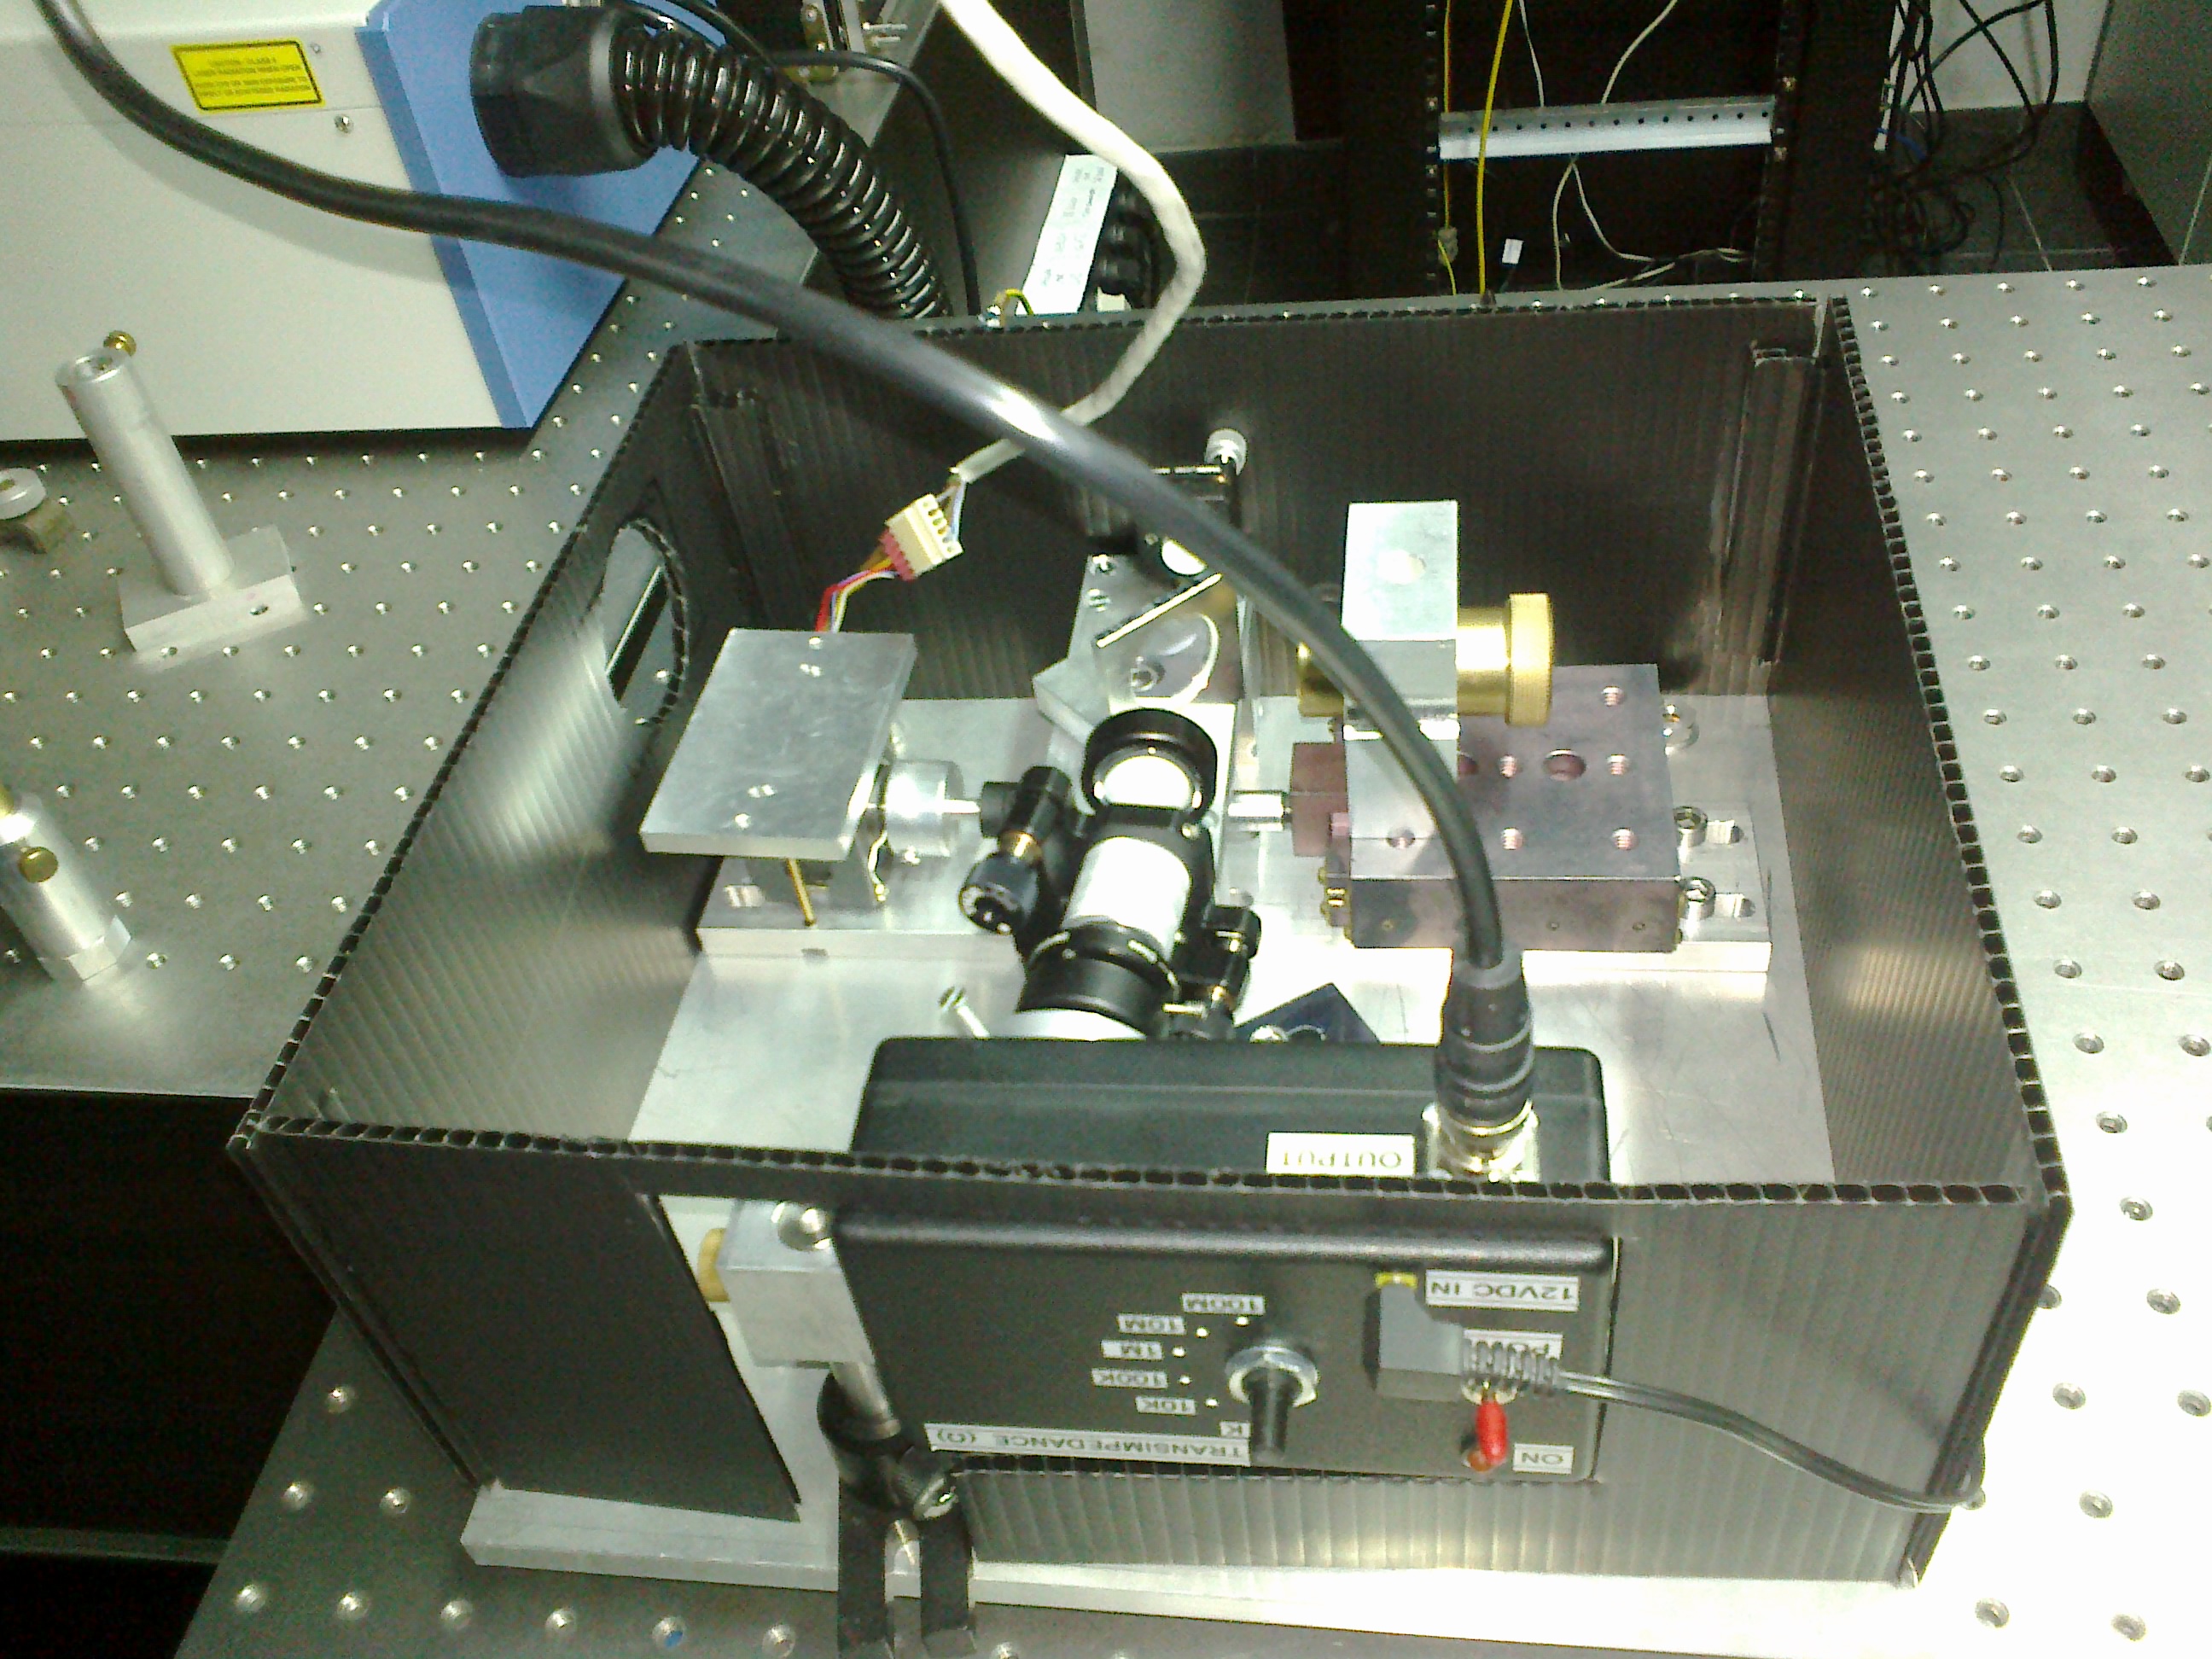 Optical autocorrelator set up